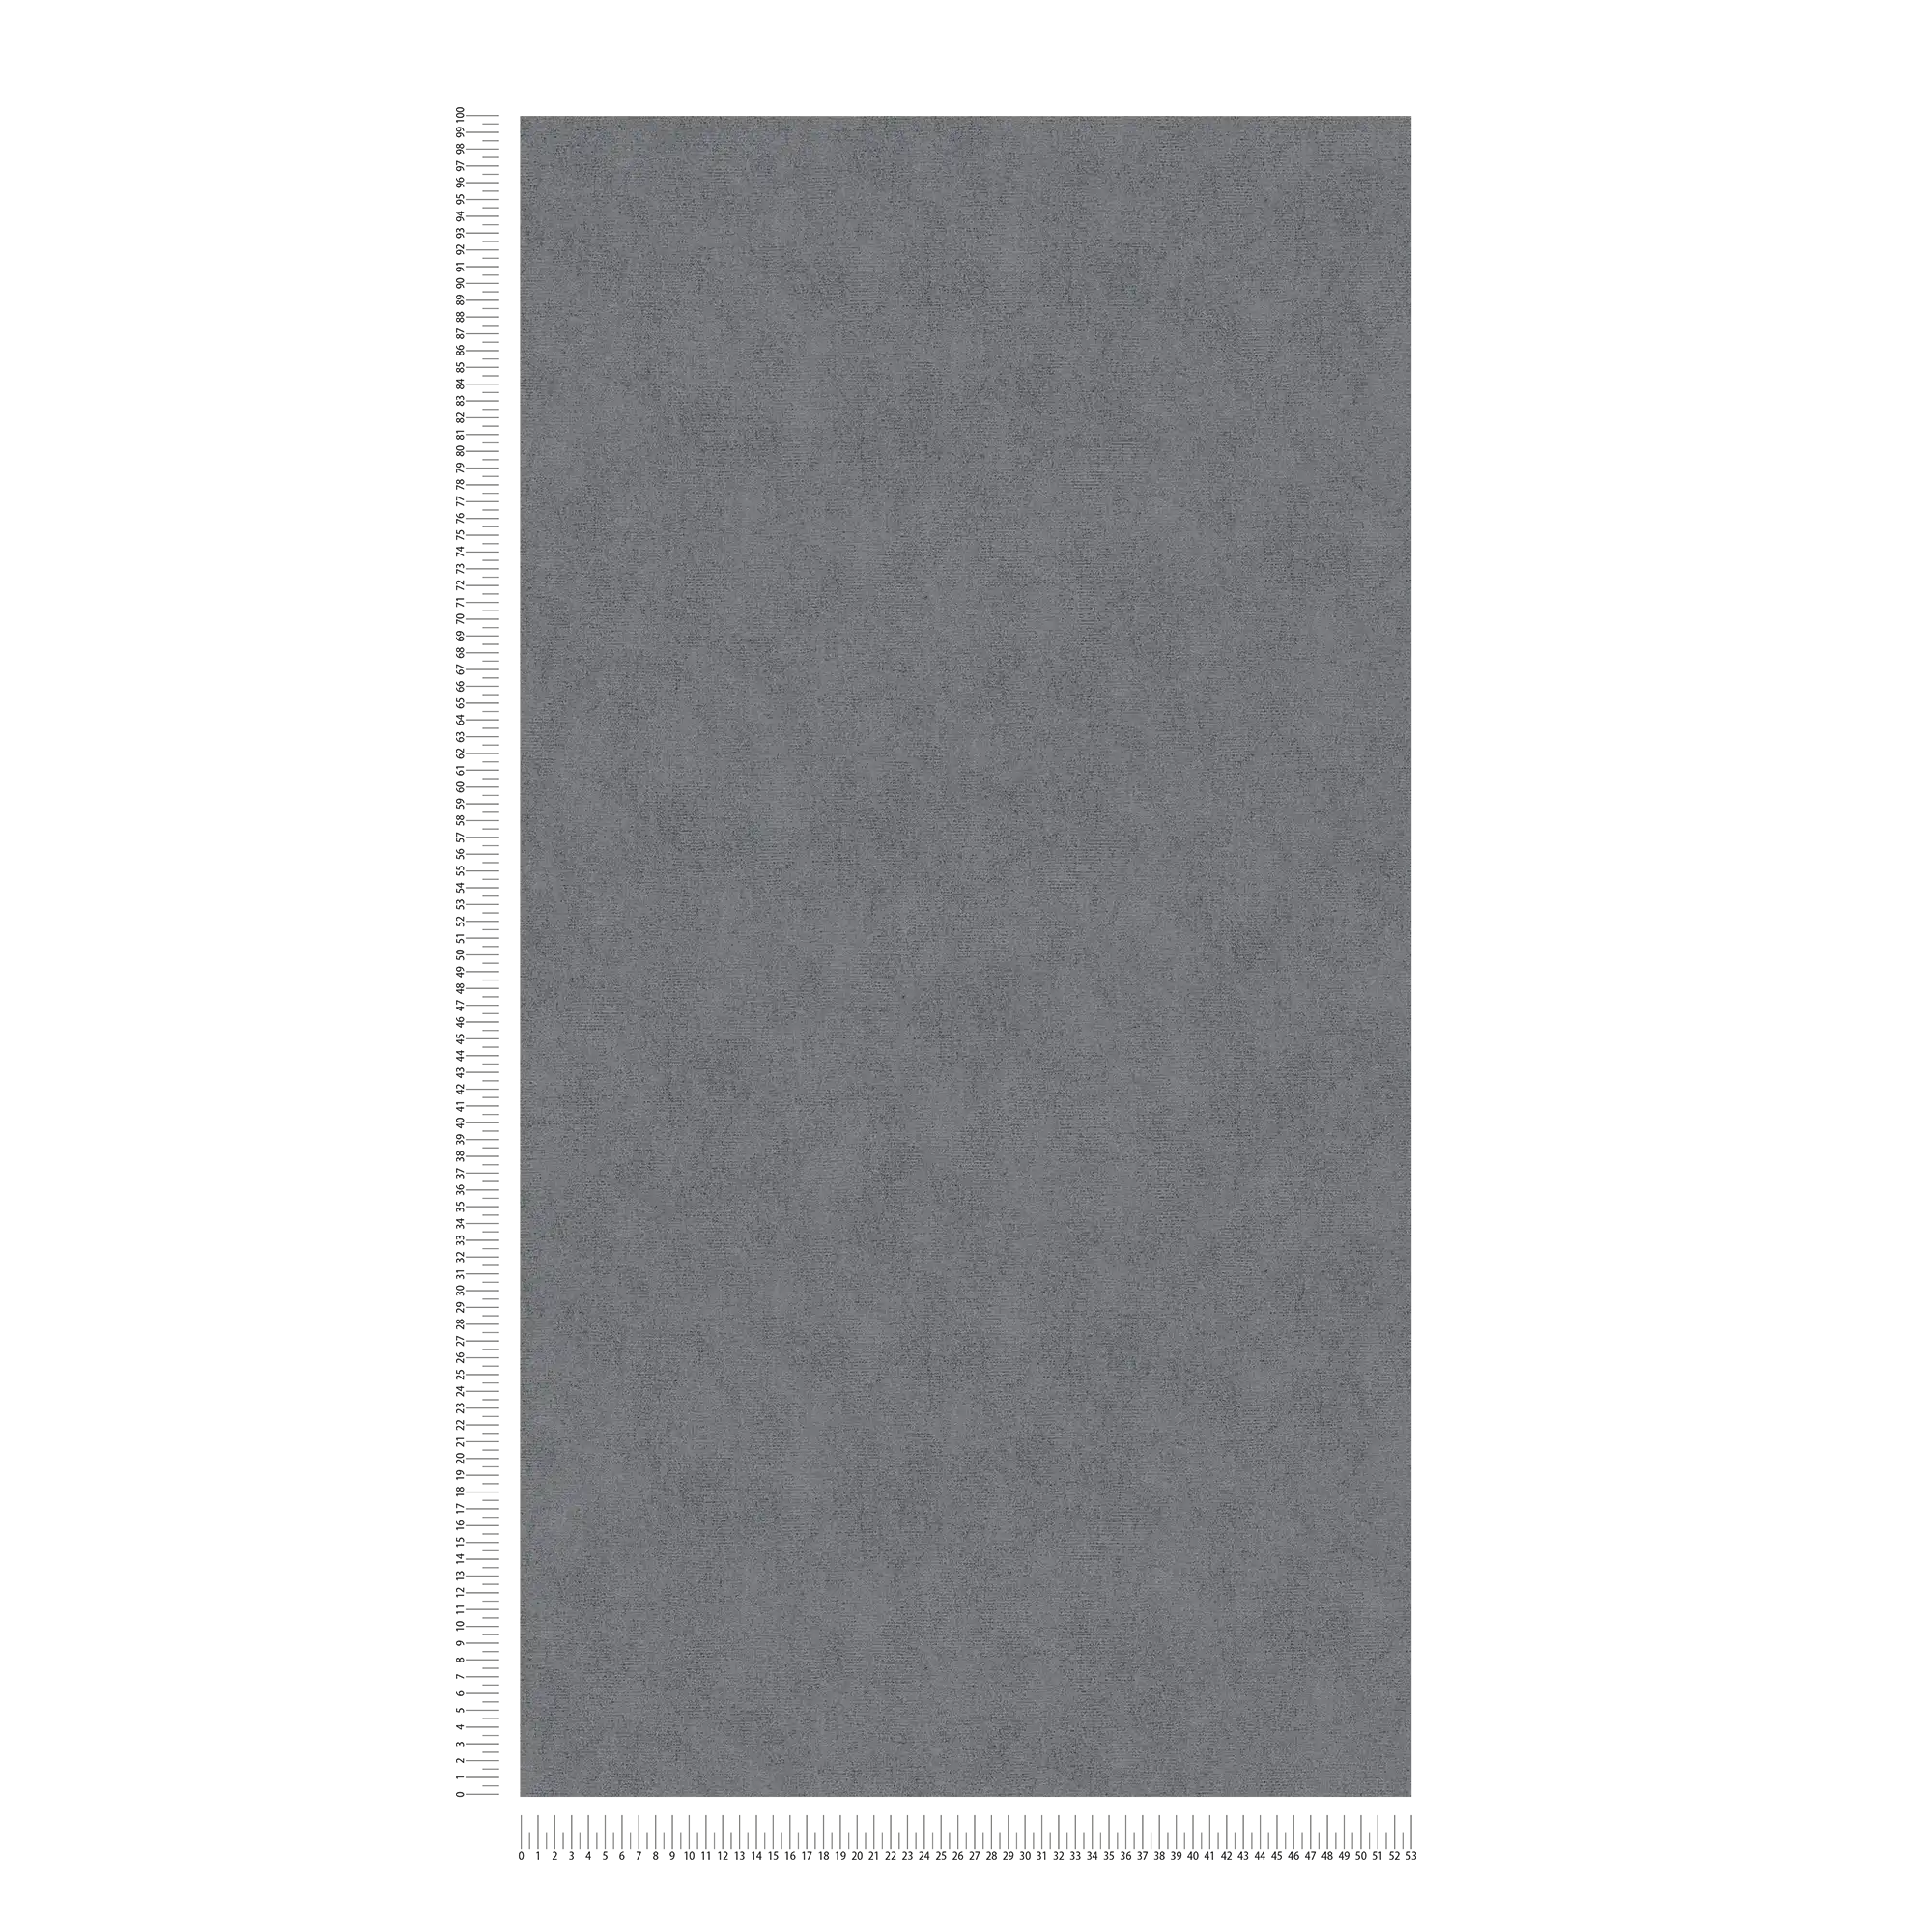             Carta da parati tinta unicat grigio scuro screziato con effetto shimmer - grigio
        